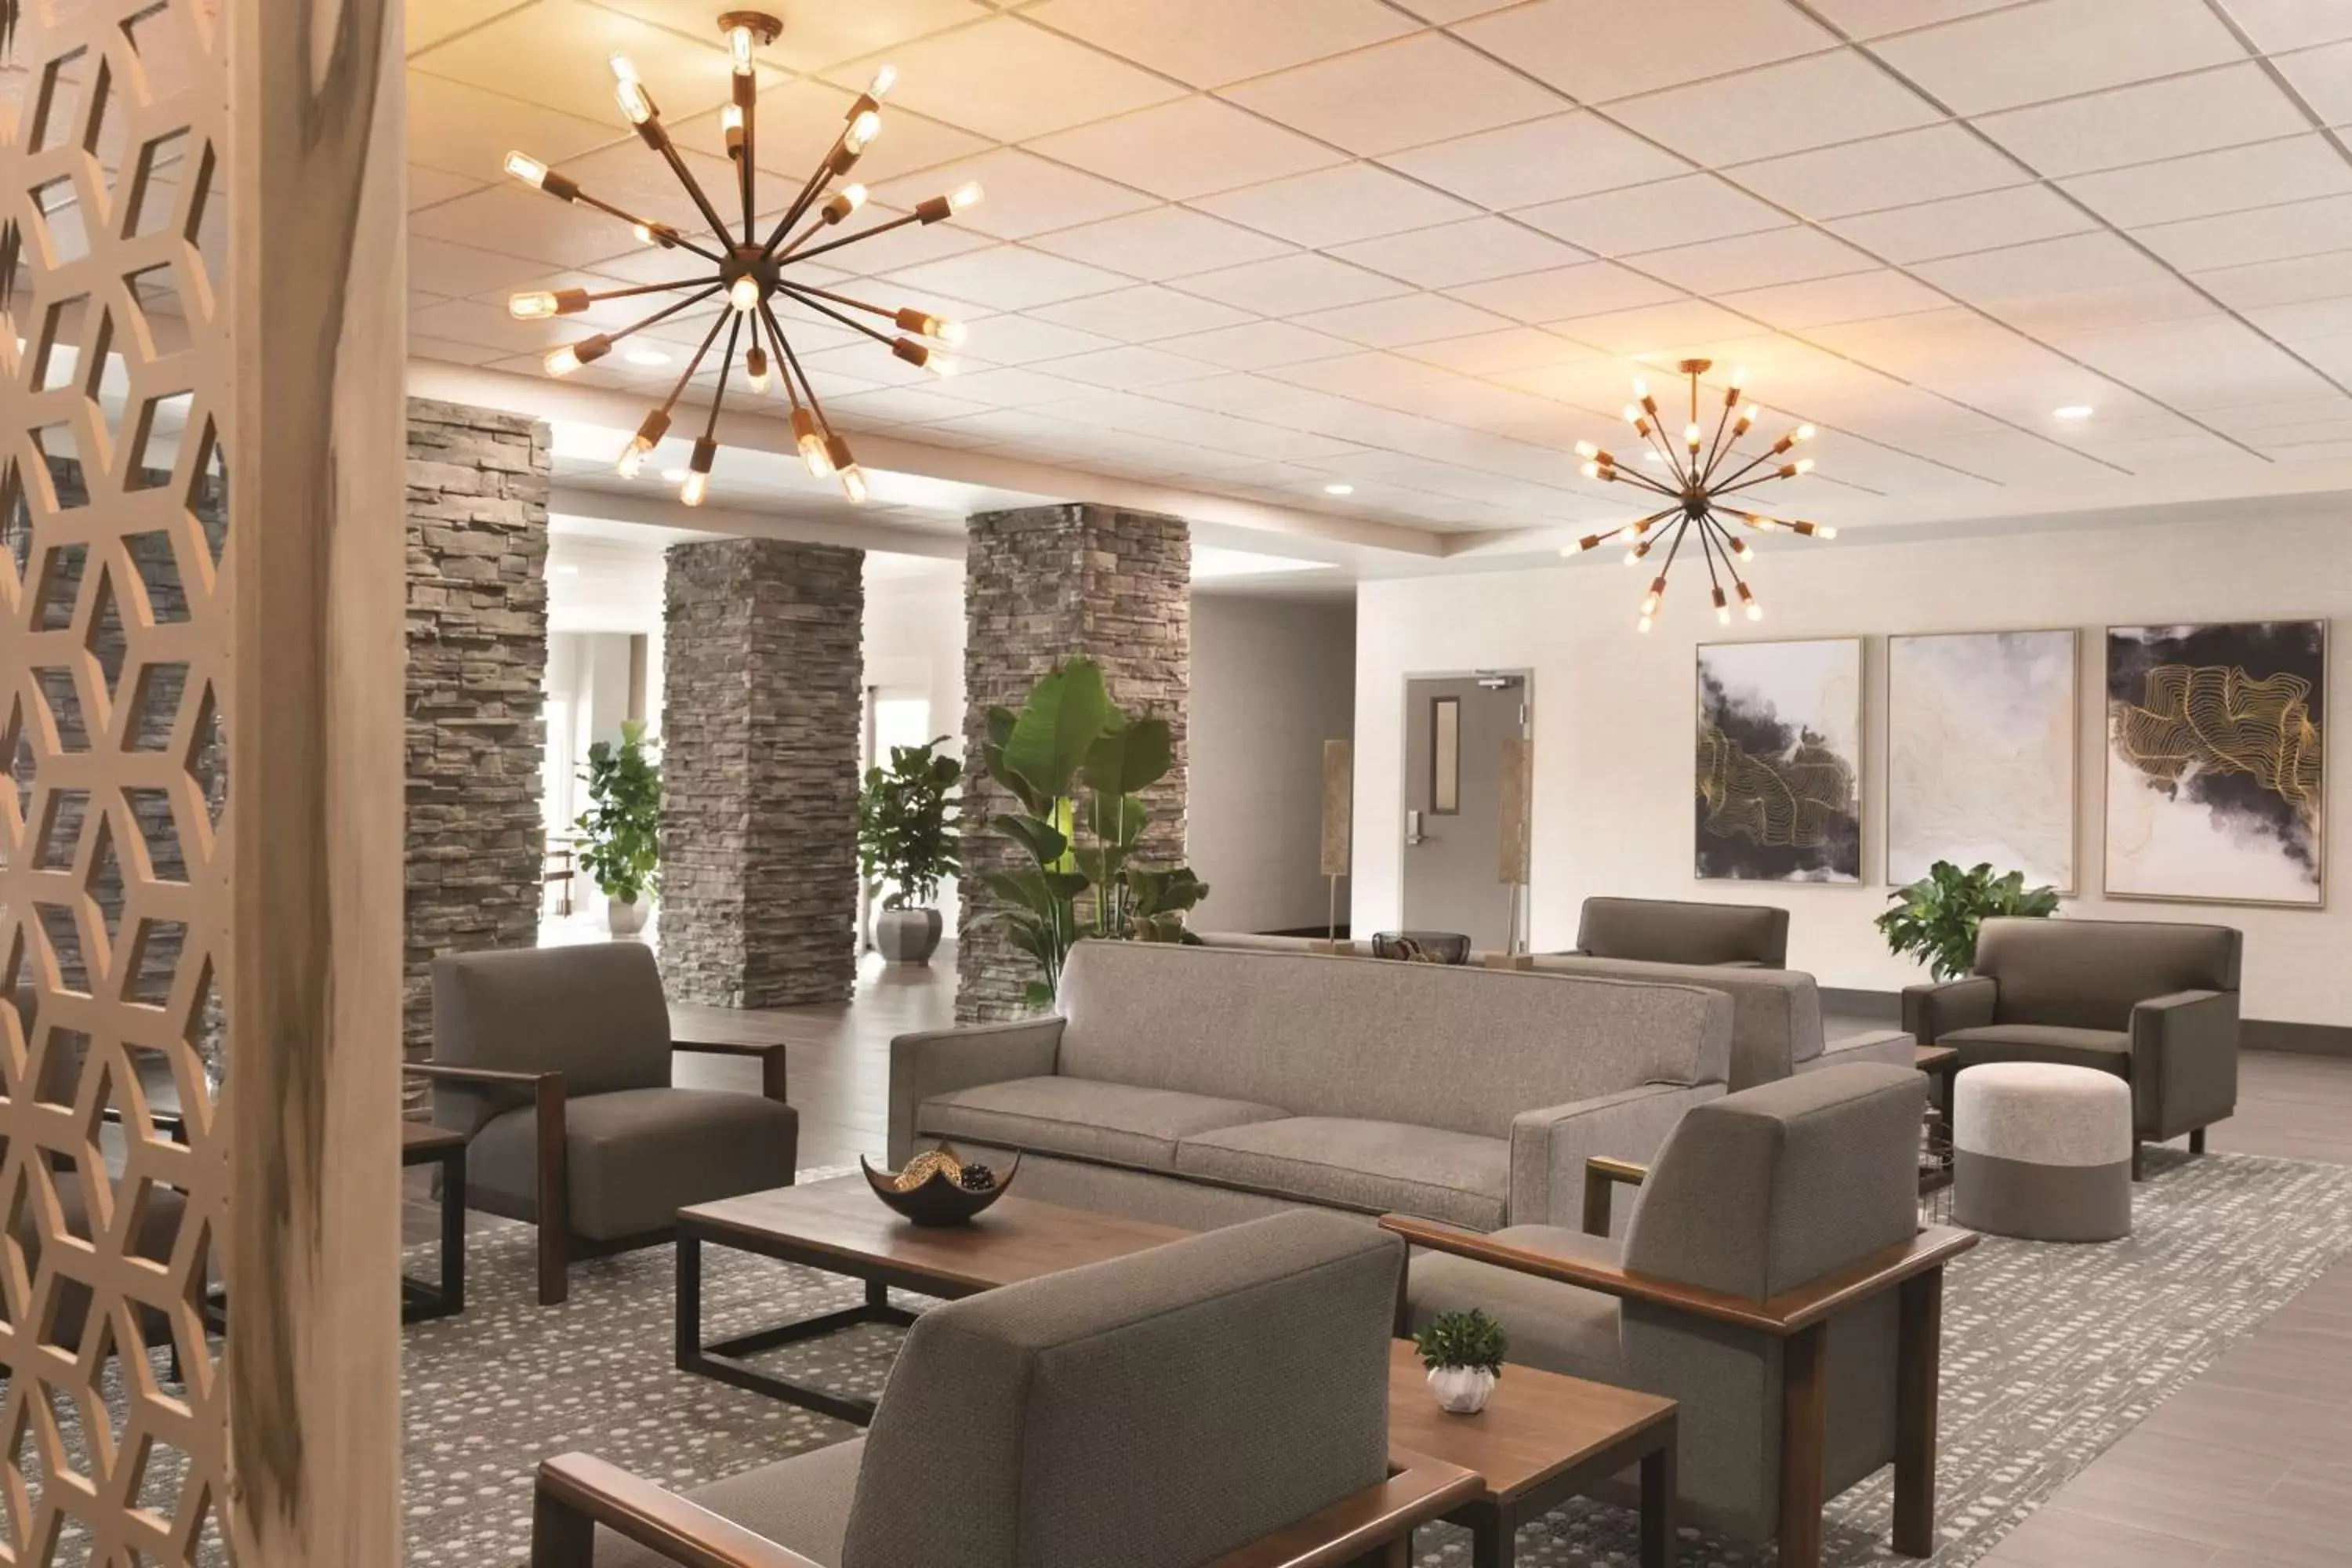 Lobby or reception, Lobby/Reception in Radisson Hotel Oklahoma City Airport